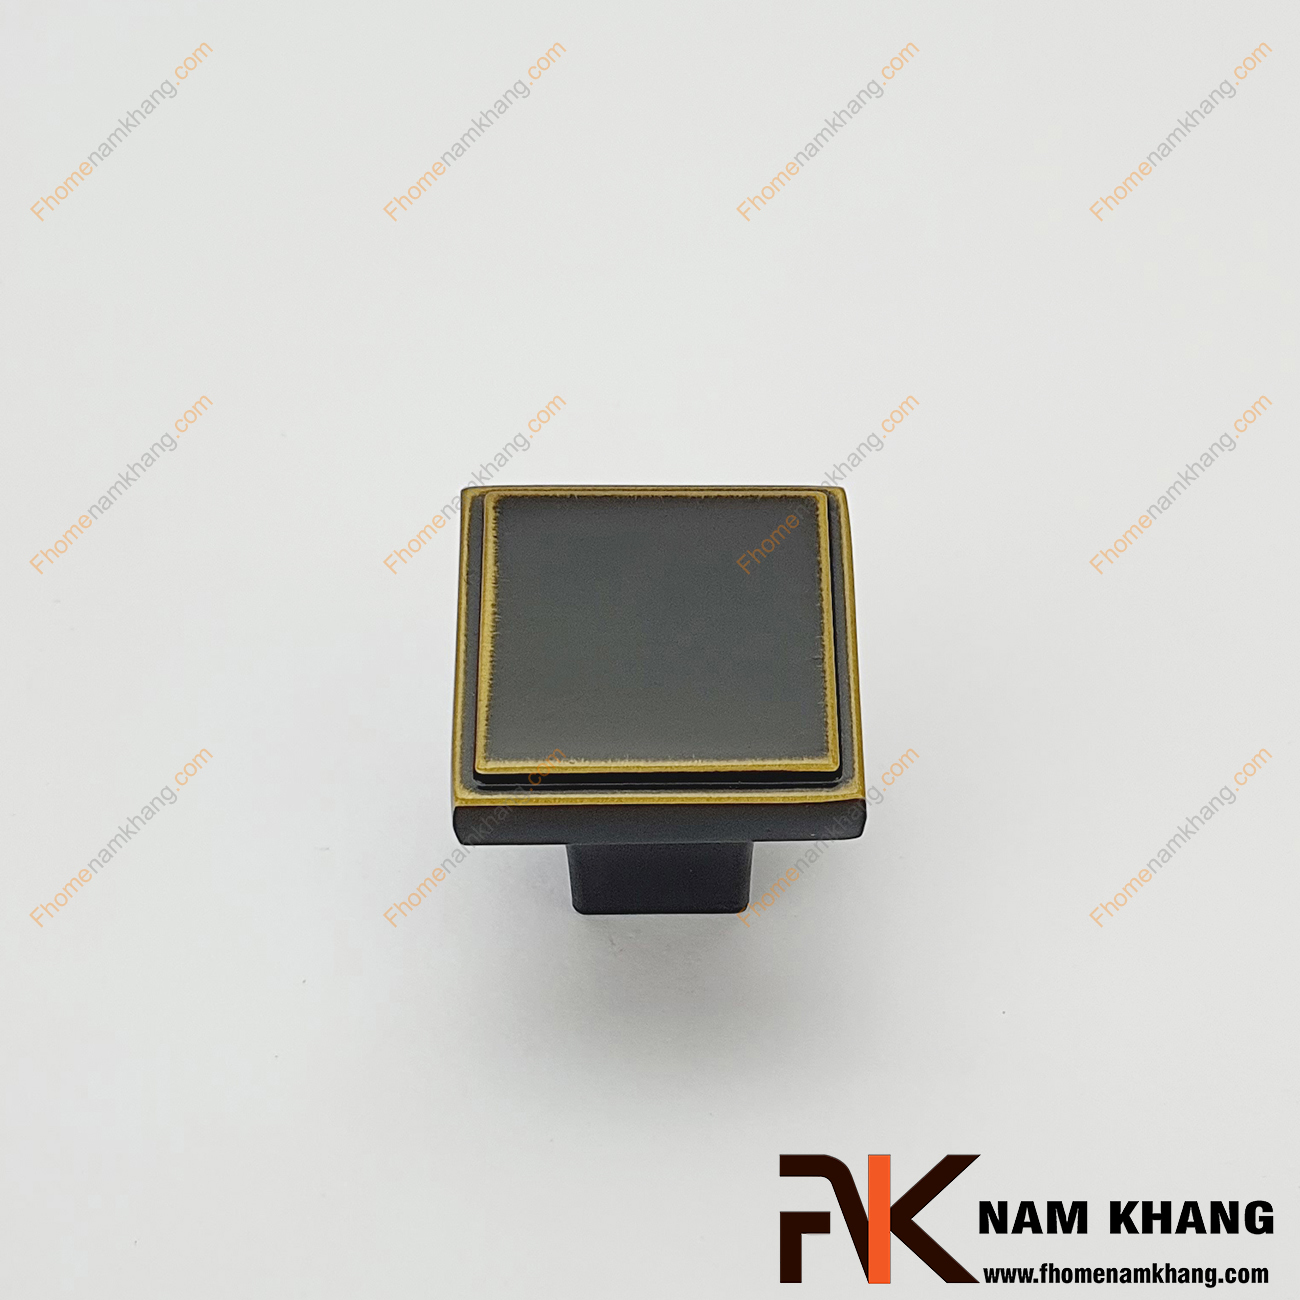 Núm cửa tủ vuông mạ màu đen vàng NK026-DV được thiết kế tinh tế dạng khối vuông từ hợp kim và được mạ màu đen vàng đặc trưng để tạo nên vẻ đẹp đặc trưng của một sản phẩm nội thất.